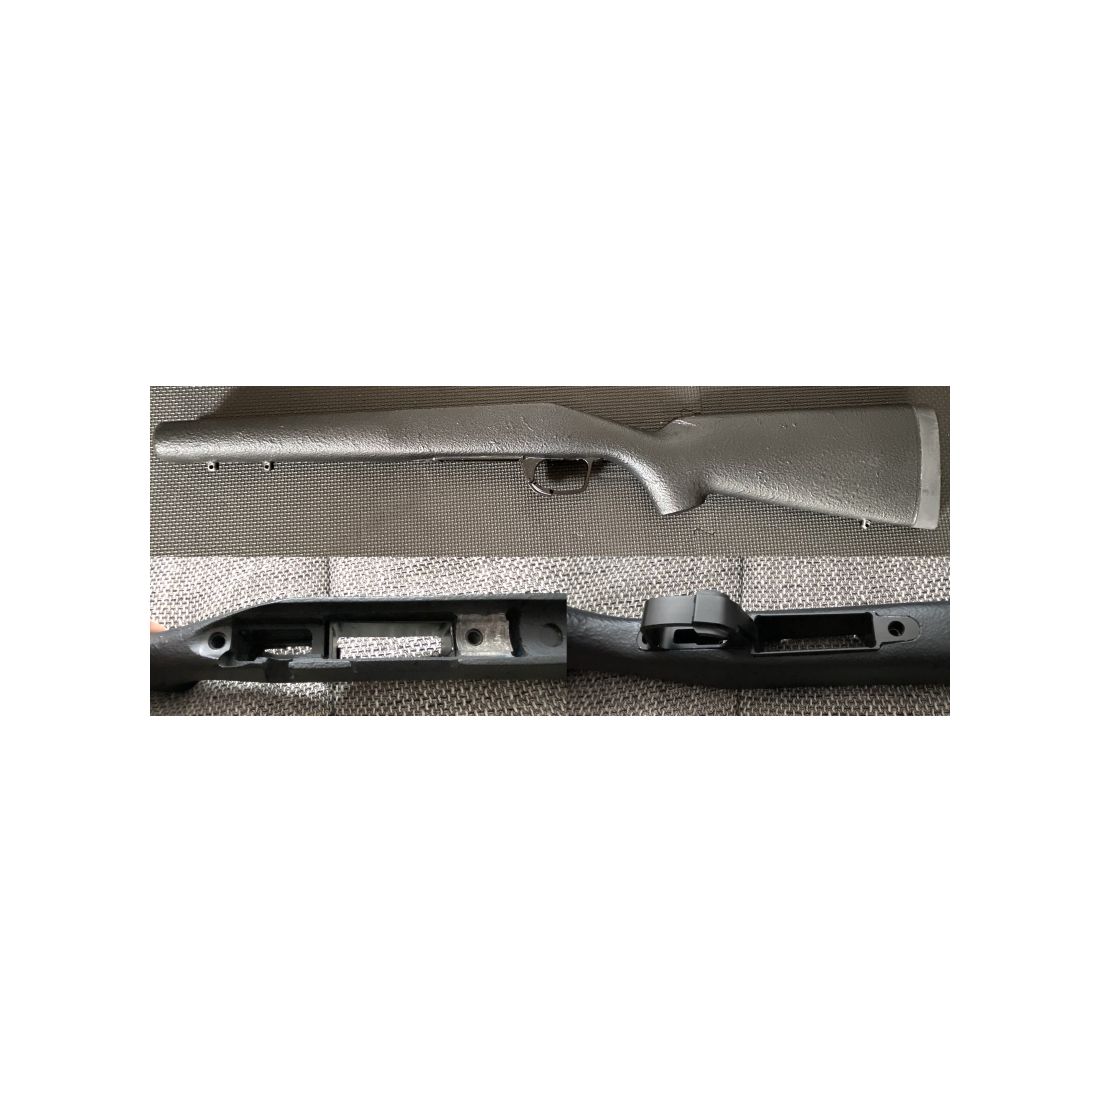 Remington 700 Schaft + Atlasworxs Abzugseinheit für AICS Magazine - Keine Blaser, Heym, Steyr, Tikka